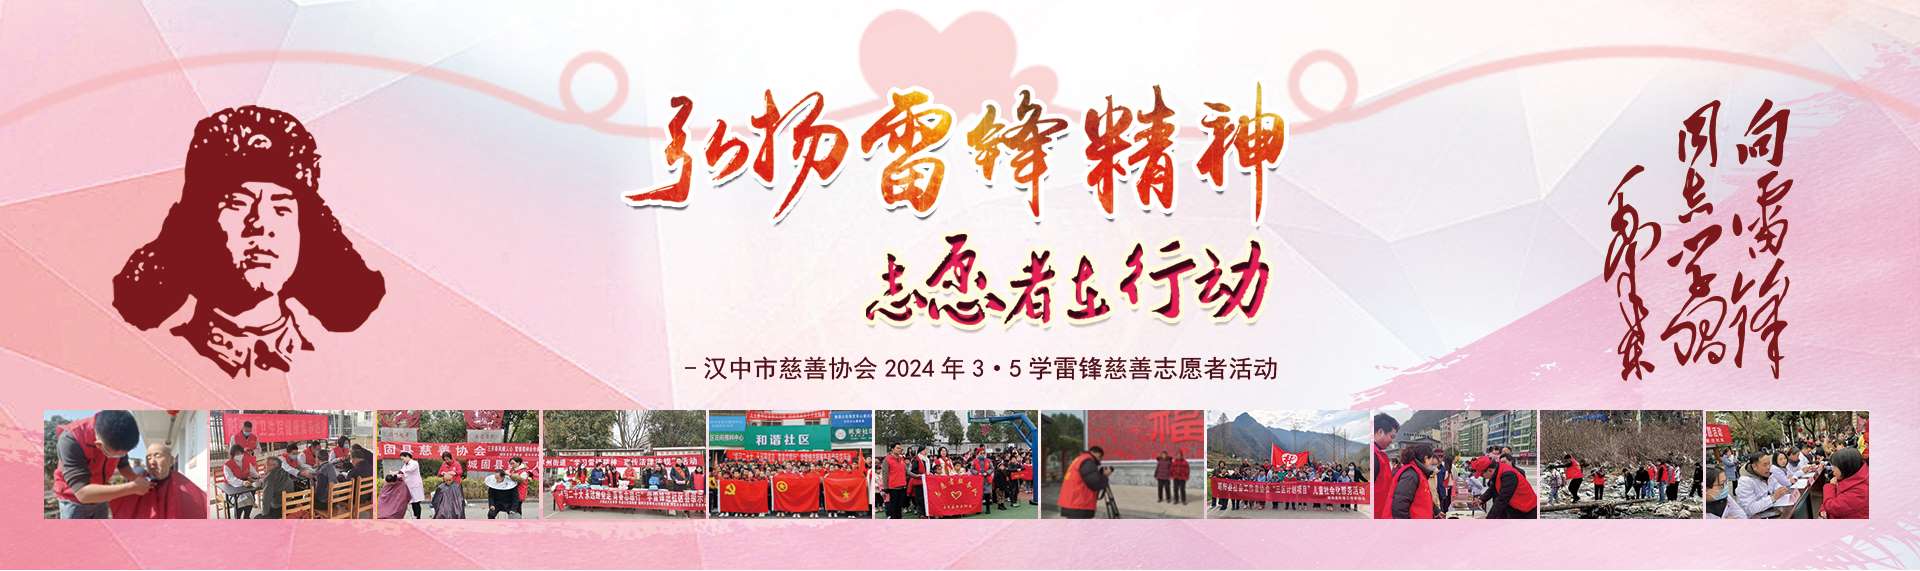 汉中市慈善协会2024年35学雷锋慈善志愿服务活动